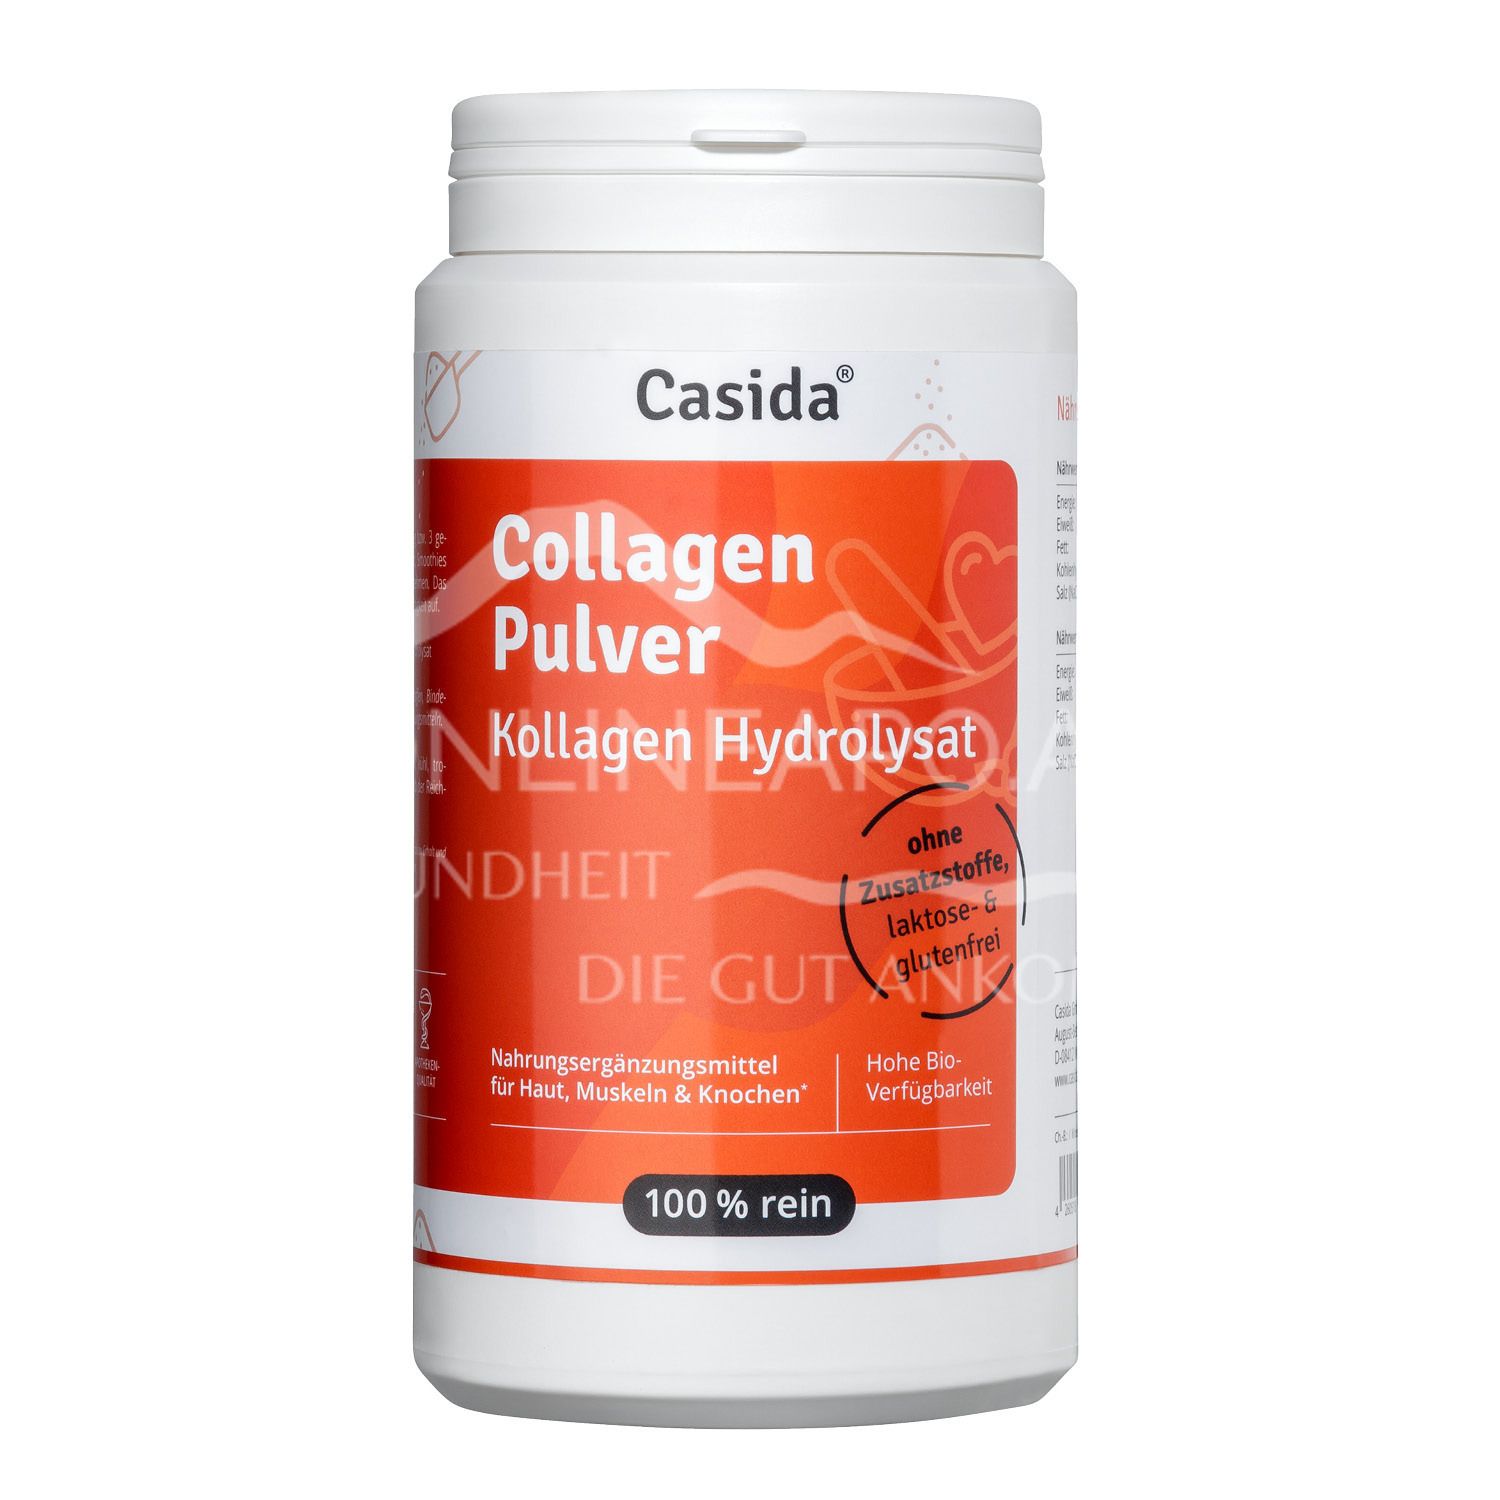 Casida Collagen Pulver – Kollagen Hydrolysat